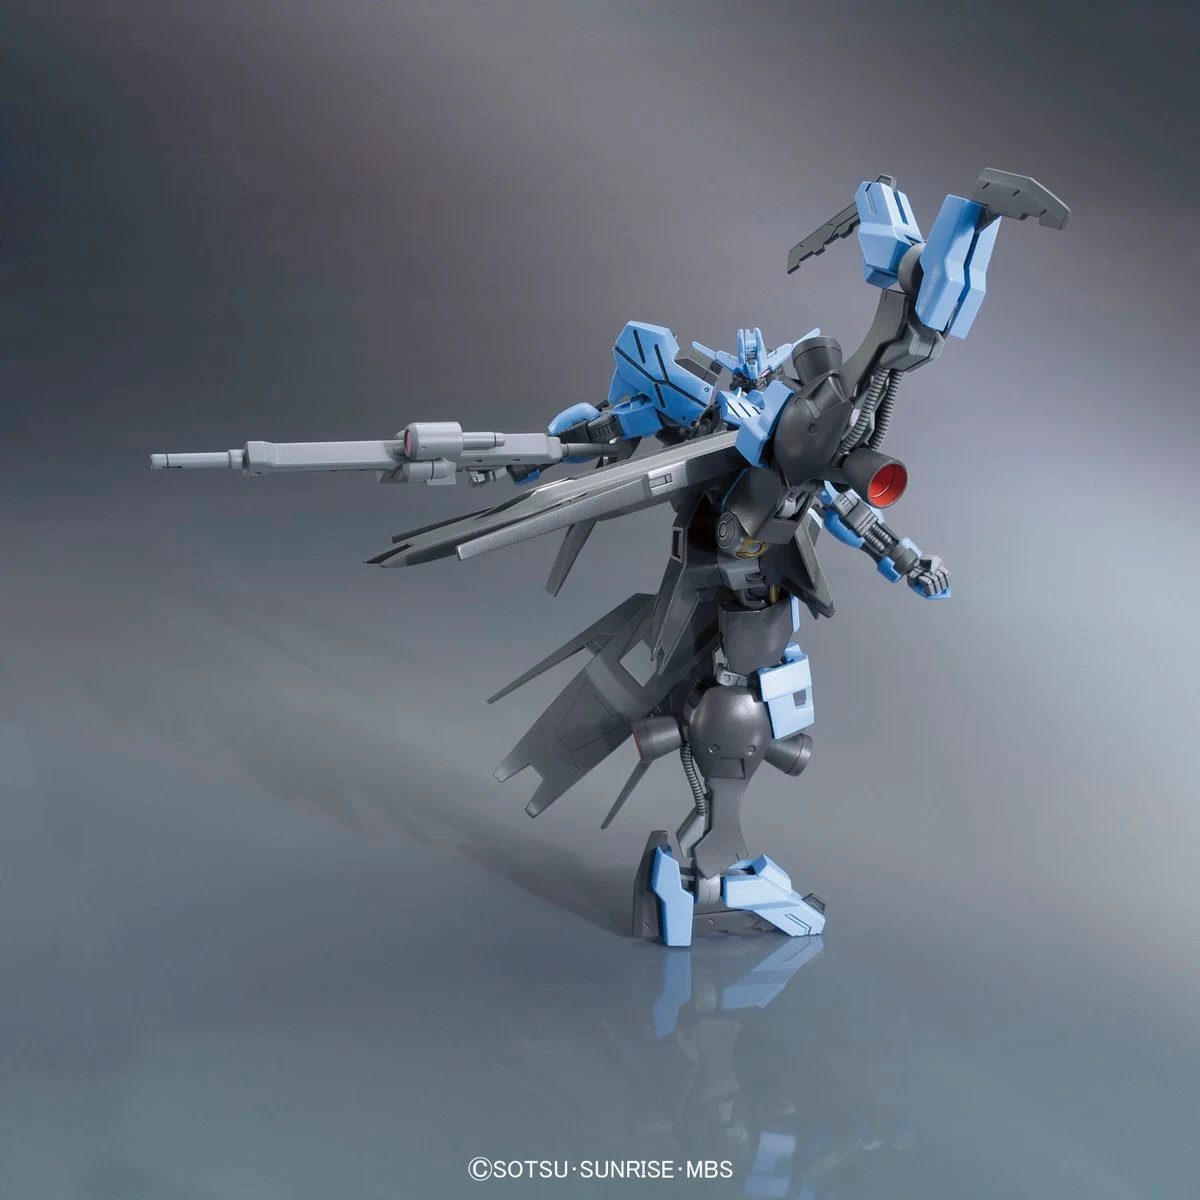 HG 1/144 Gundam Vidar - Release Info, Box art and Official Images